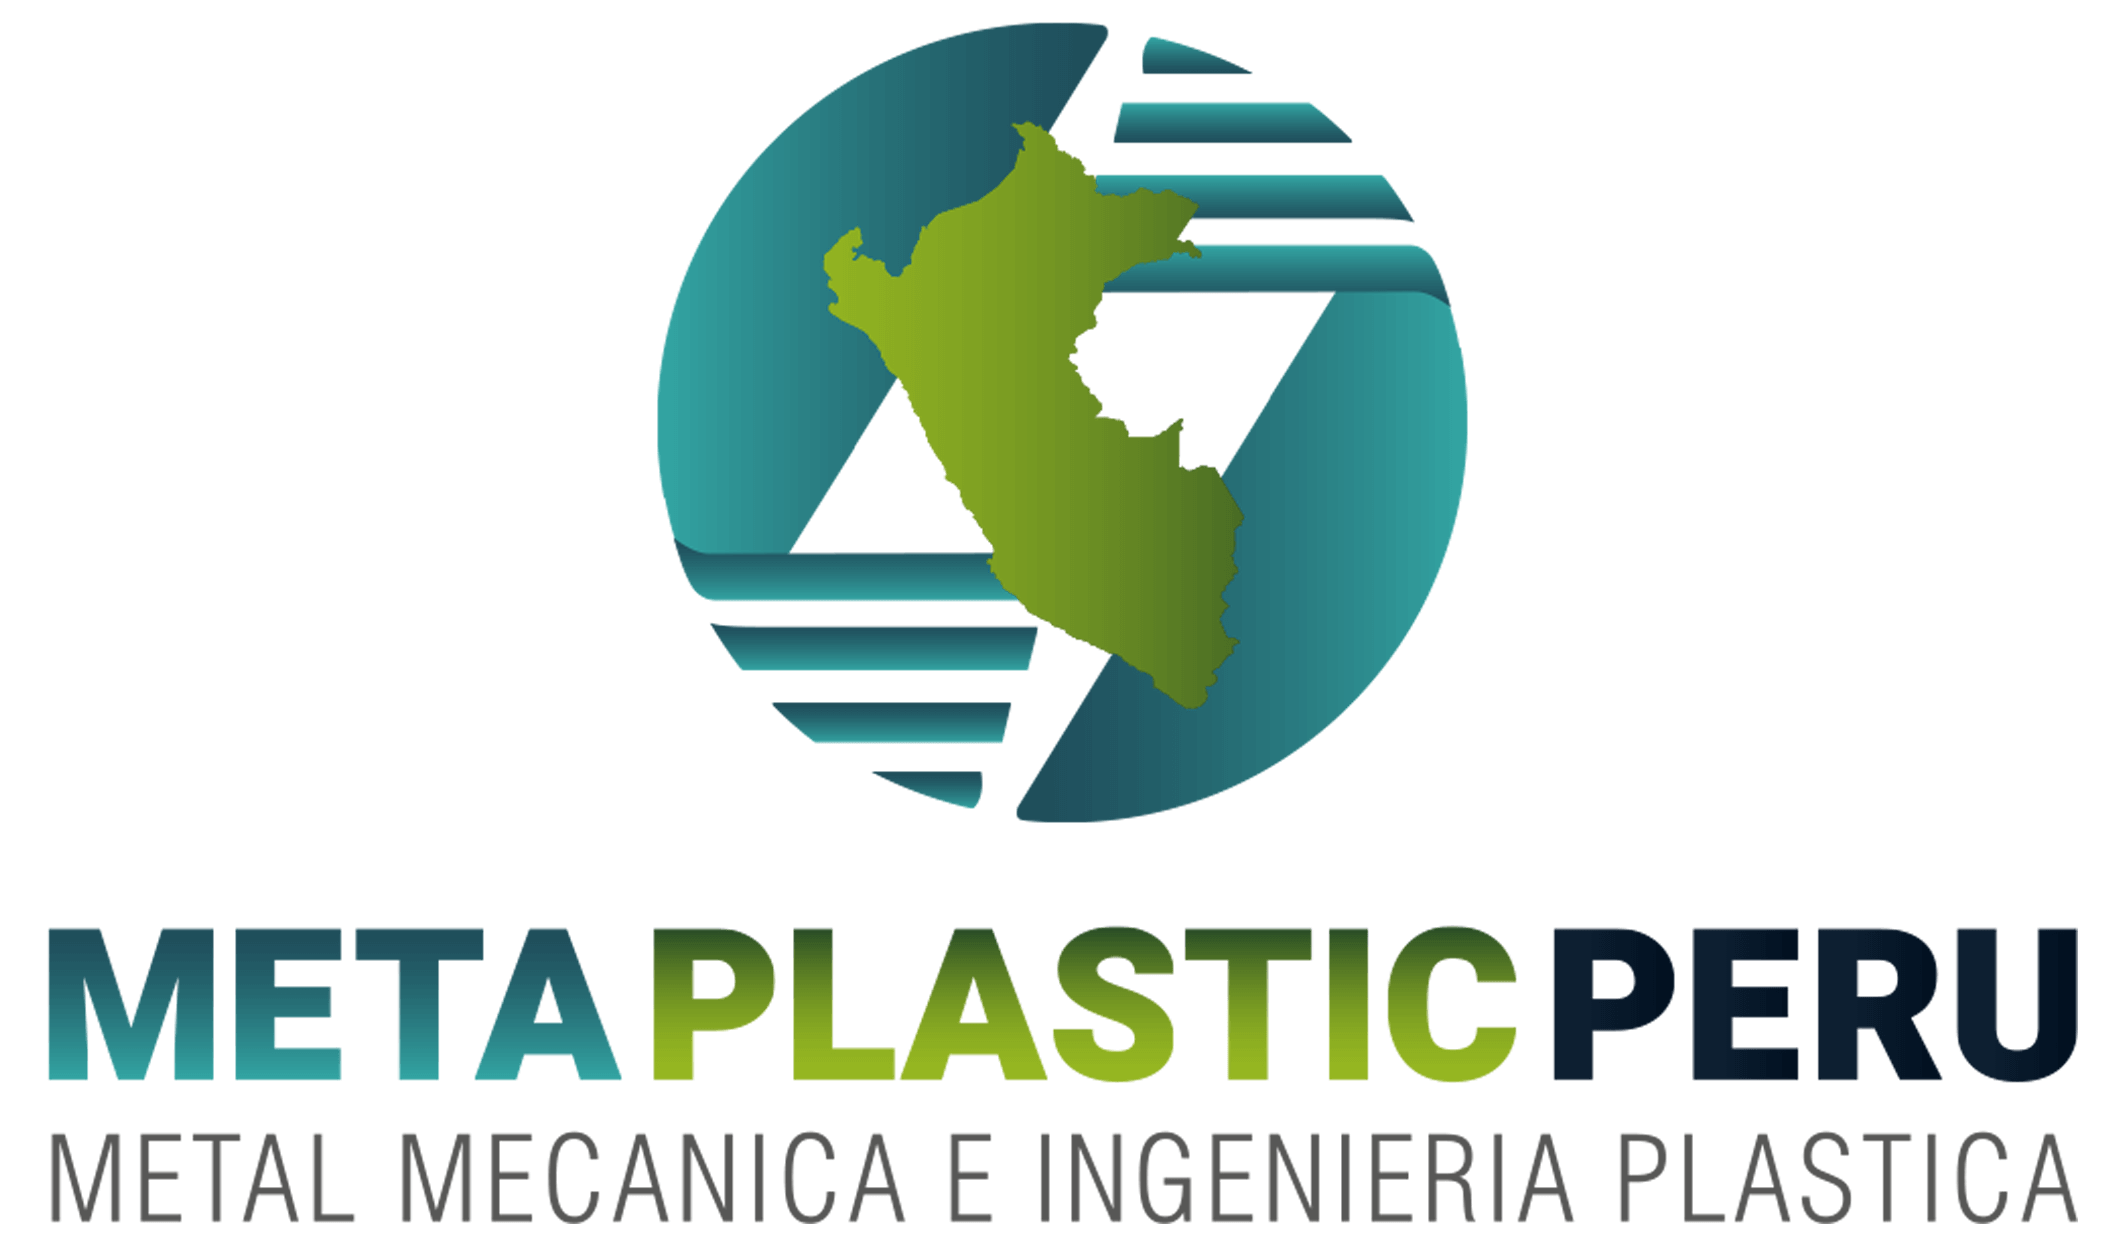 Metaplastic Perú